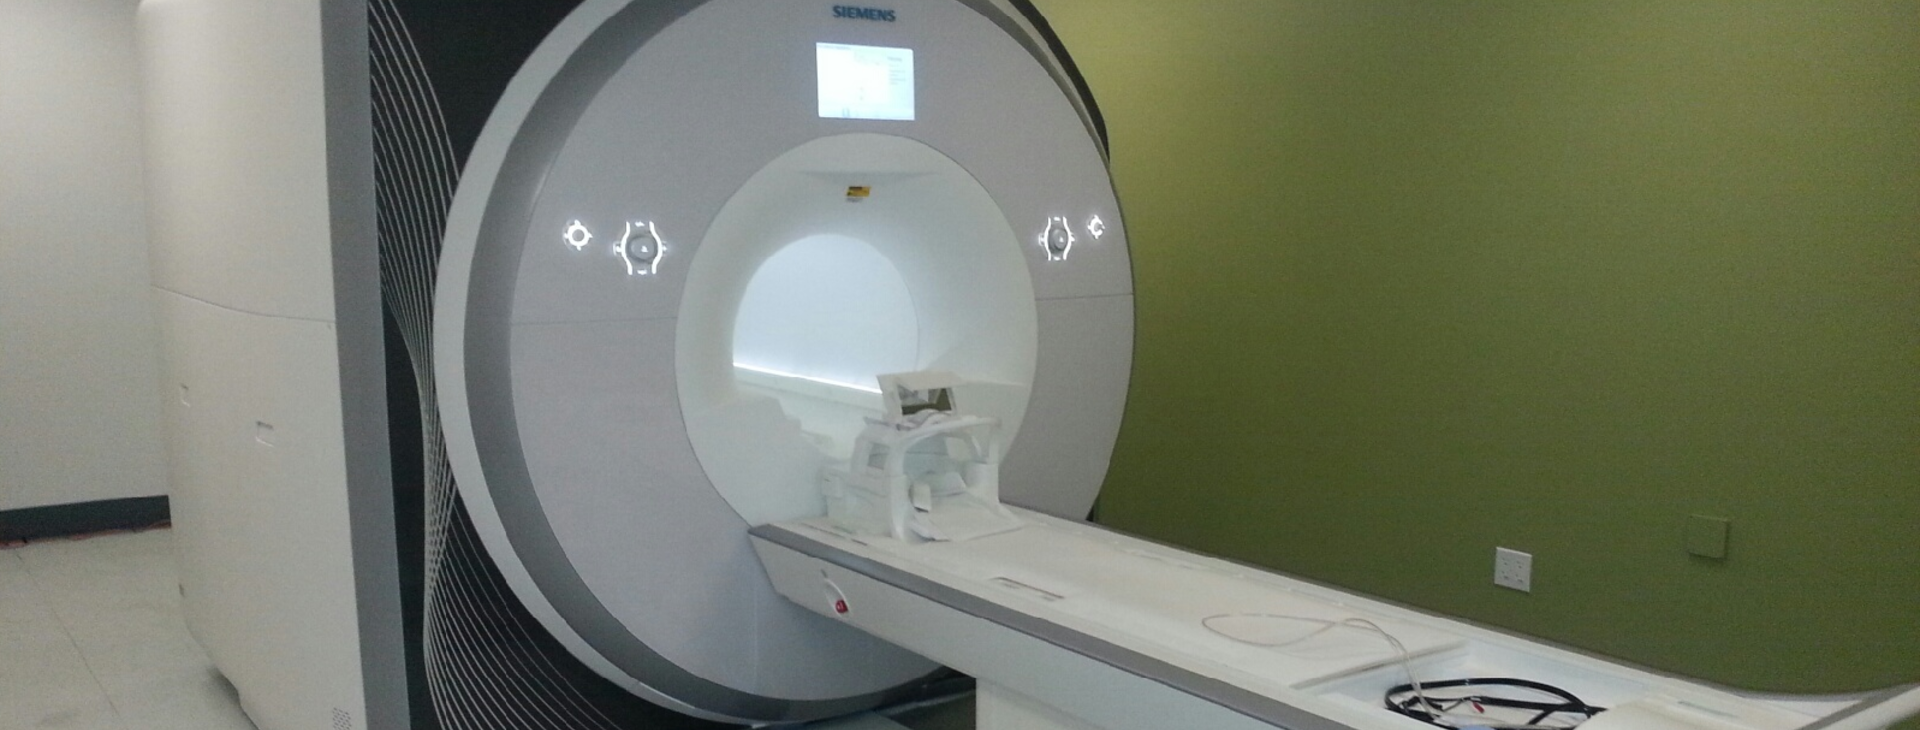 Prisma MRI